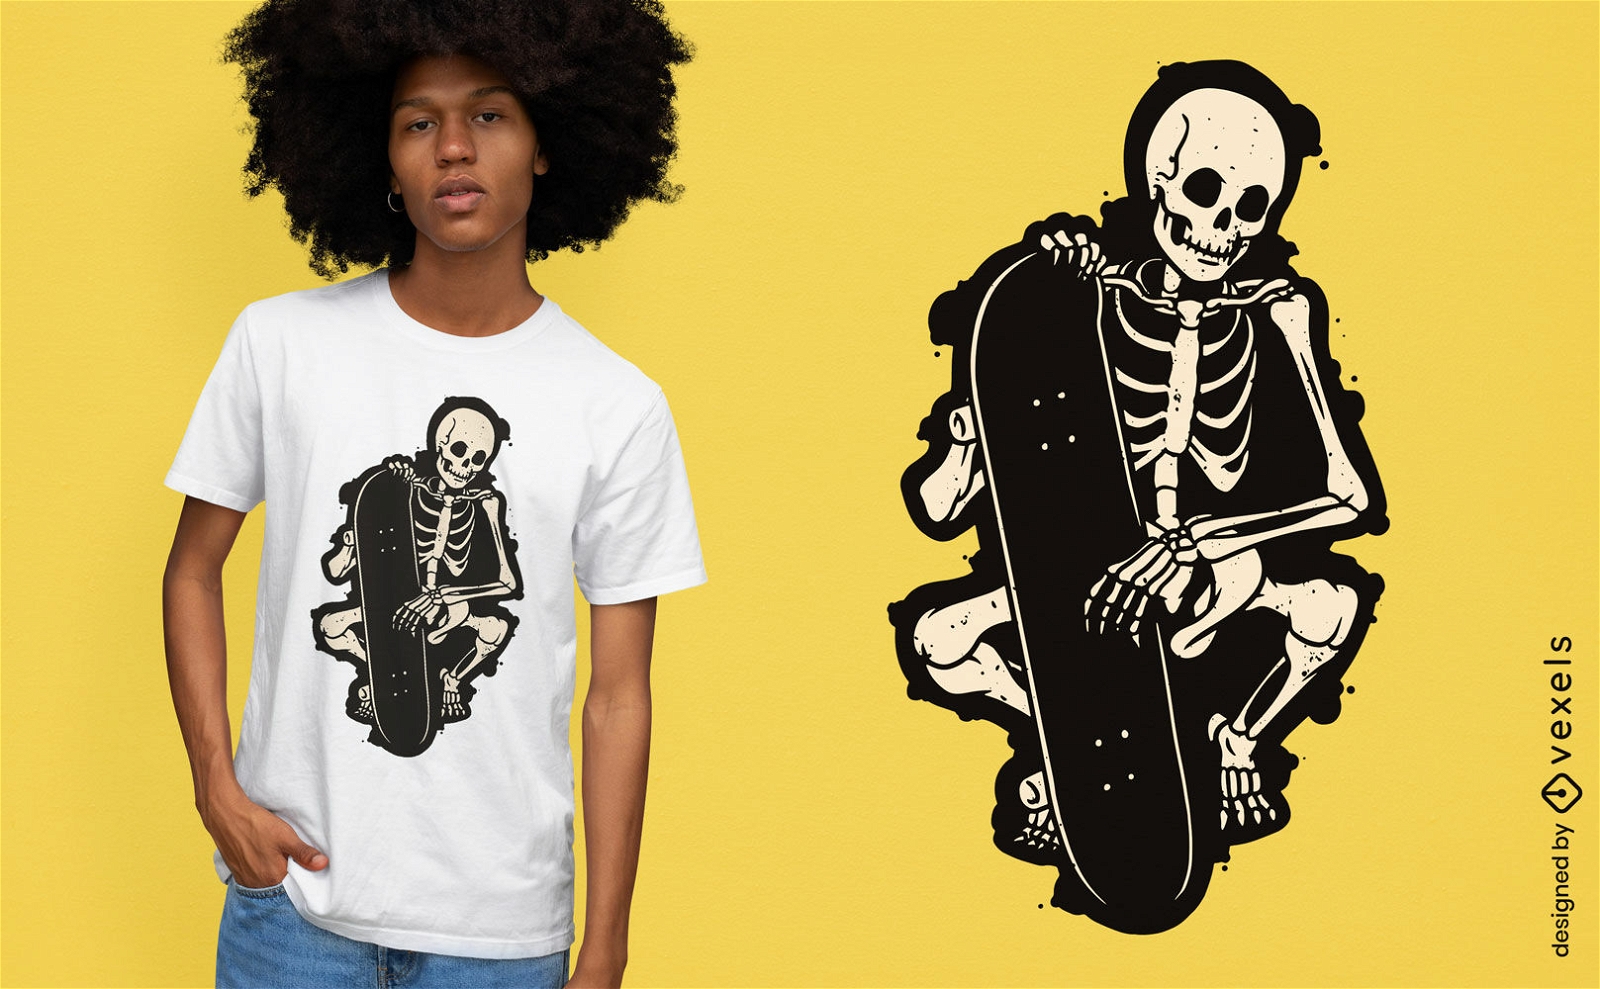 Esqueleto com design de camiseta recortada de skate